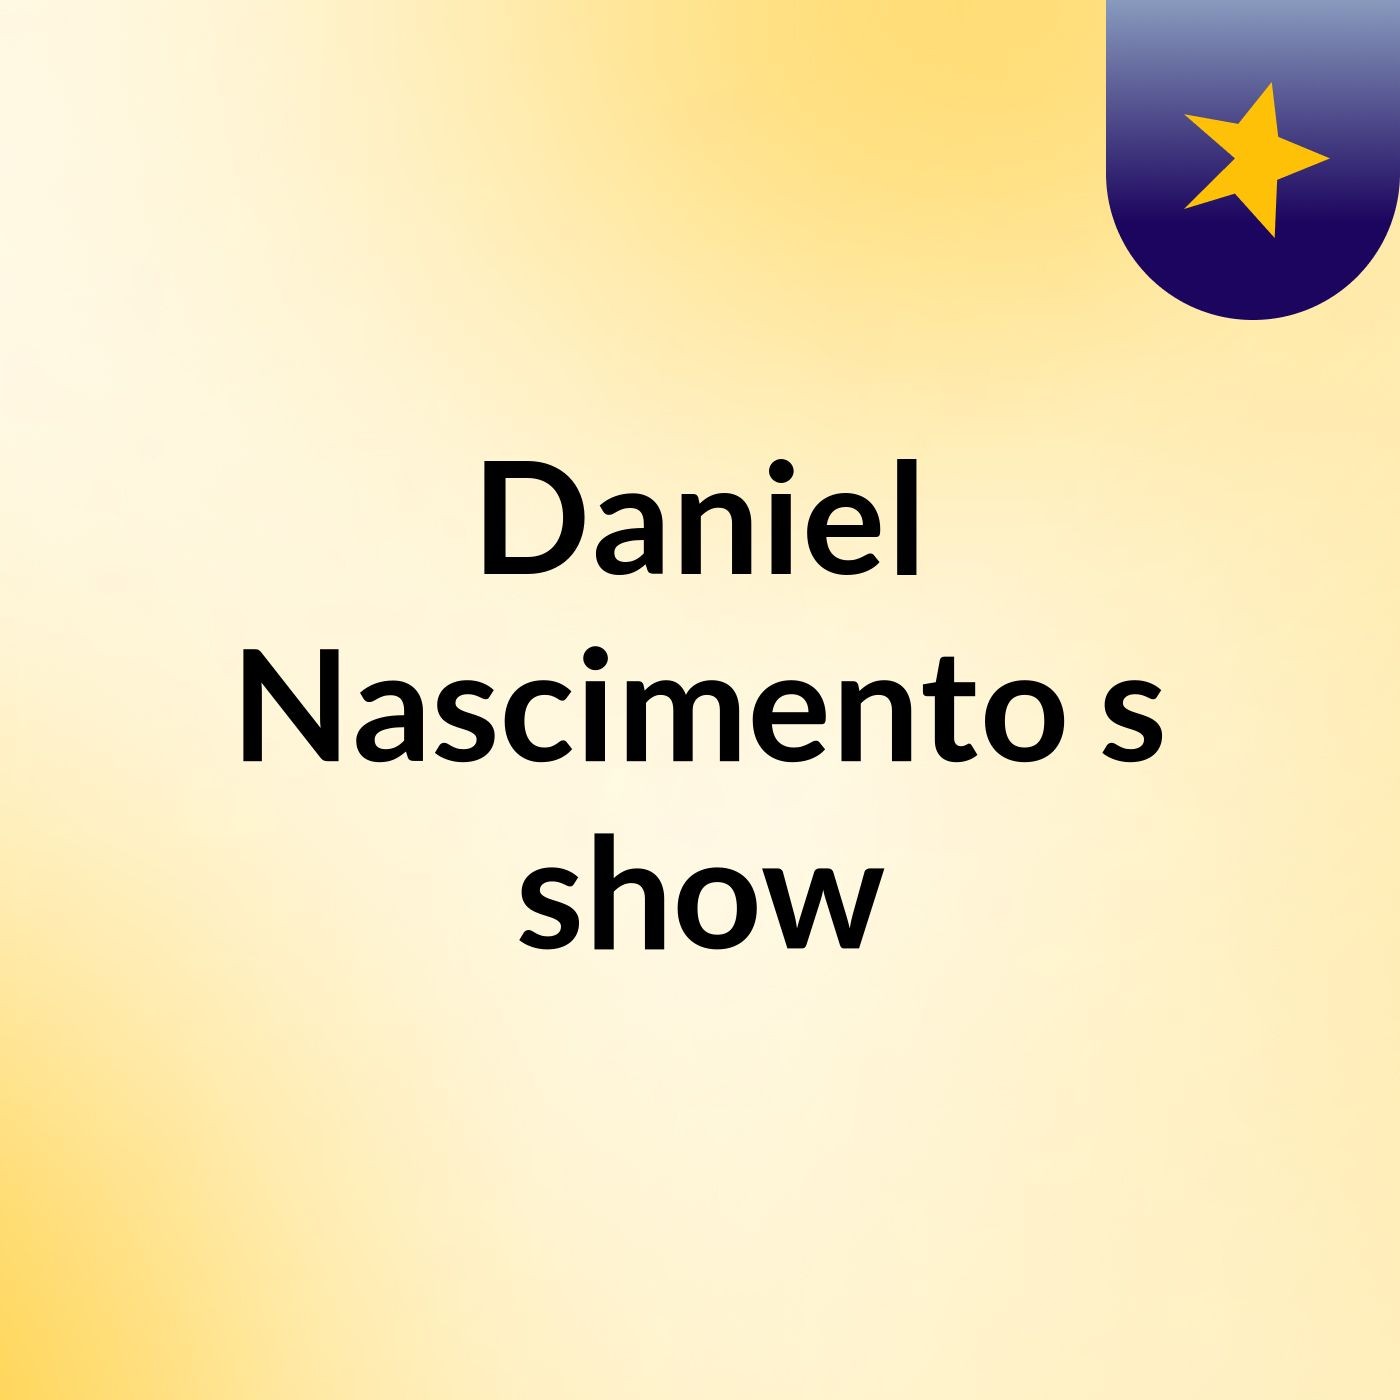 Daniel Nascimento's show